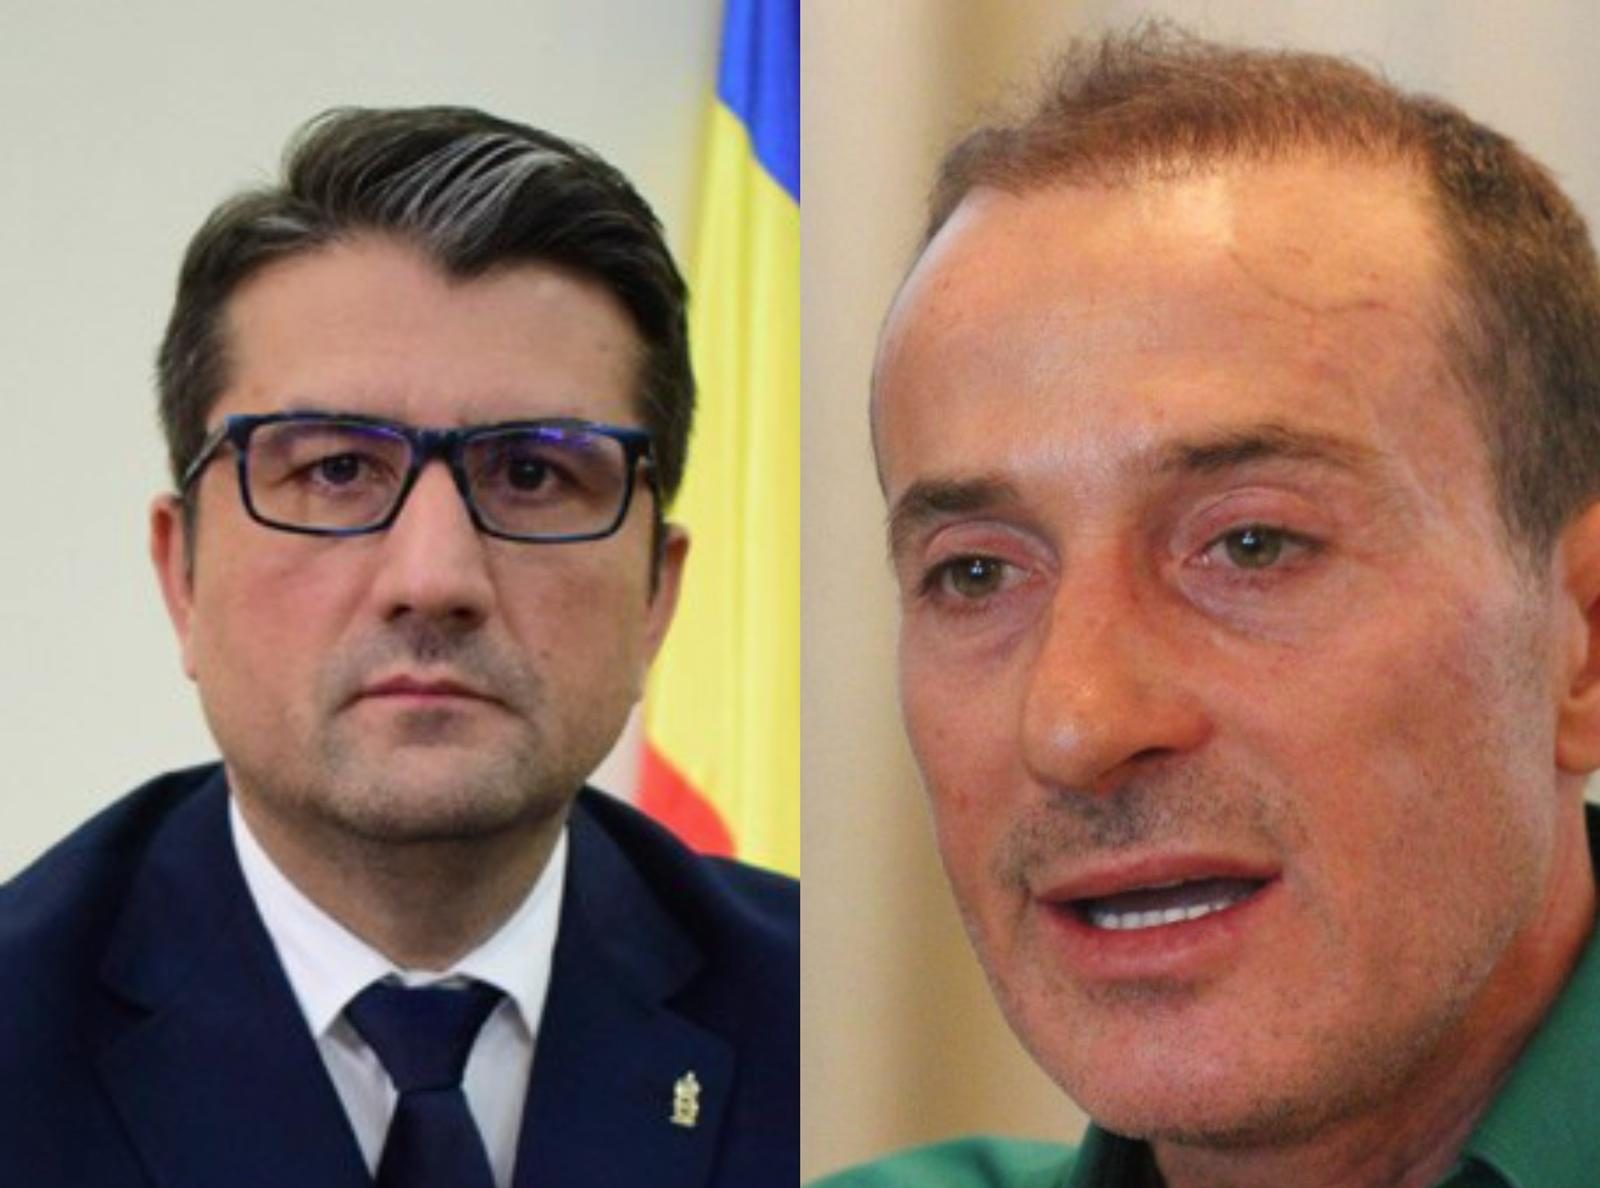 Foştii primari ai Constanţei, Radu Mazăre şi Decebal Făgădău, trimişi în judecată pentru vânzarea nelegală a mai multor terenuri